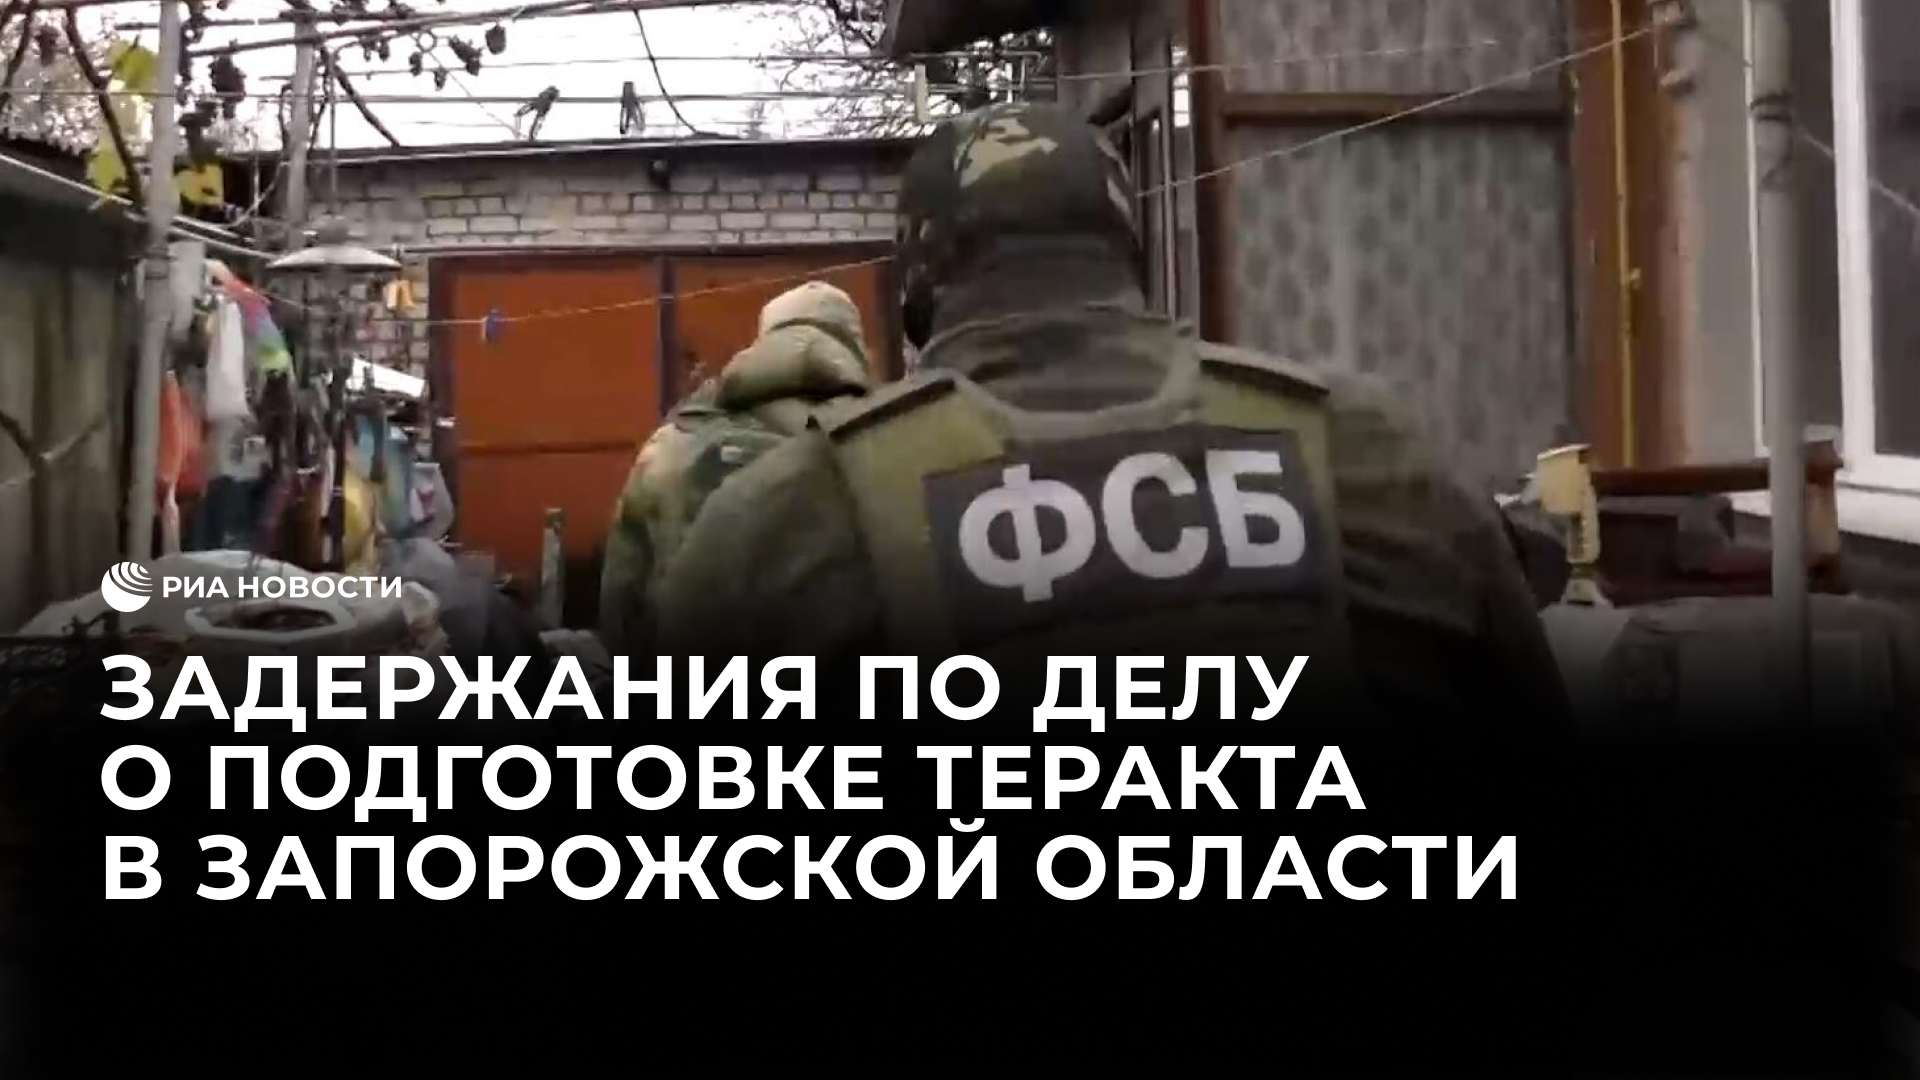 Задержания по делу о подготовке теракта в Запорожской области